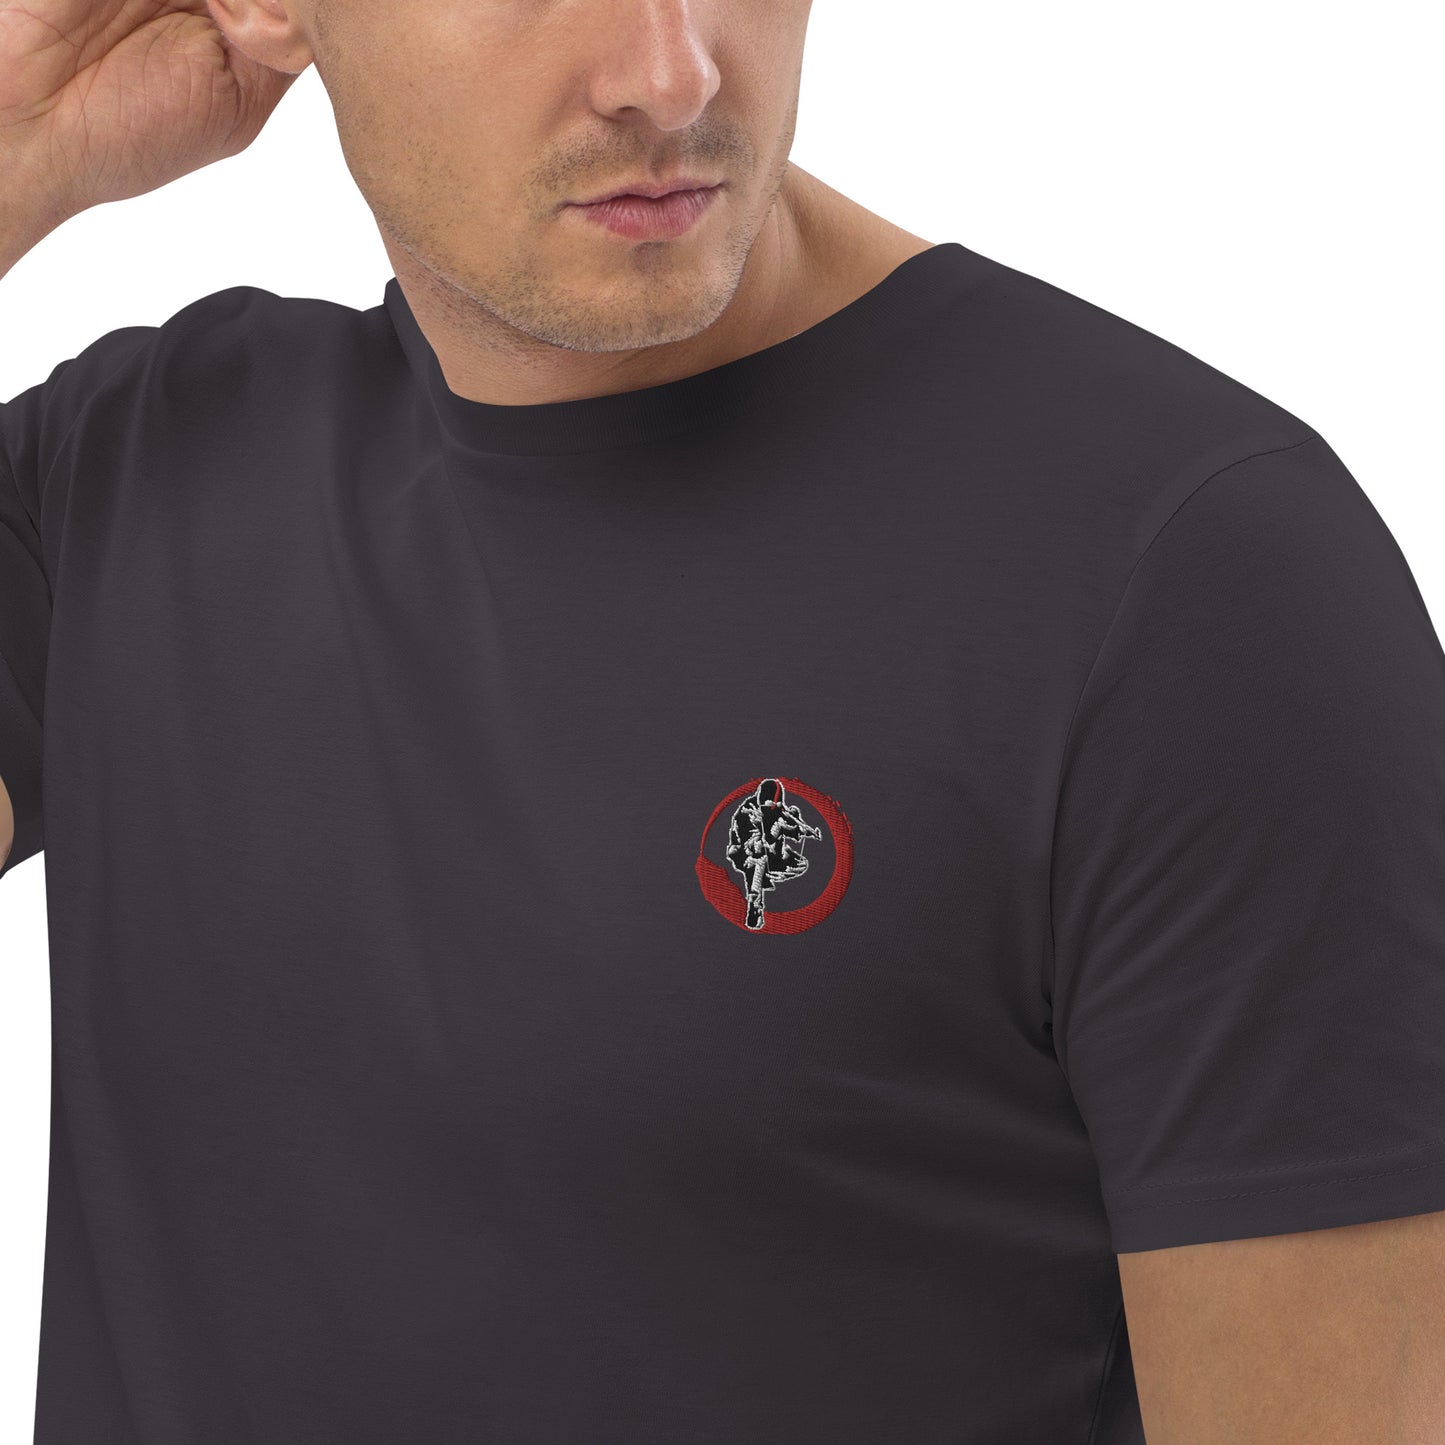 T-shirt unisexe en coton bio Ribellu Contour Rouge - Ochju Ochju Anthracite / S Ochju T-shirt unisexe en coton bio Ribellu Contour Rouge